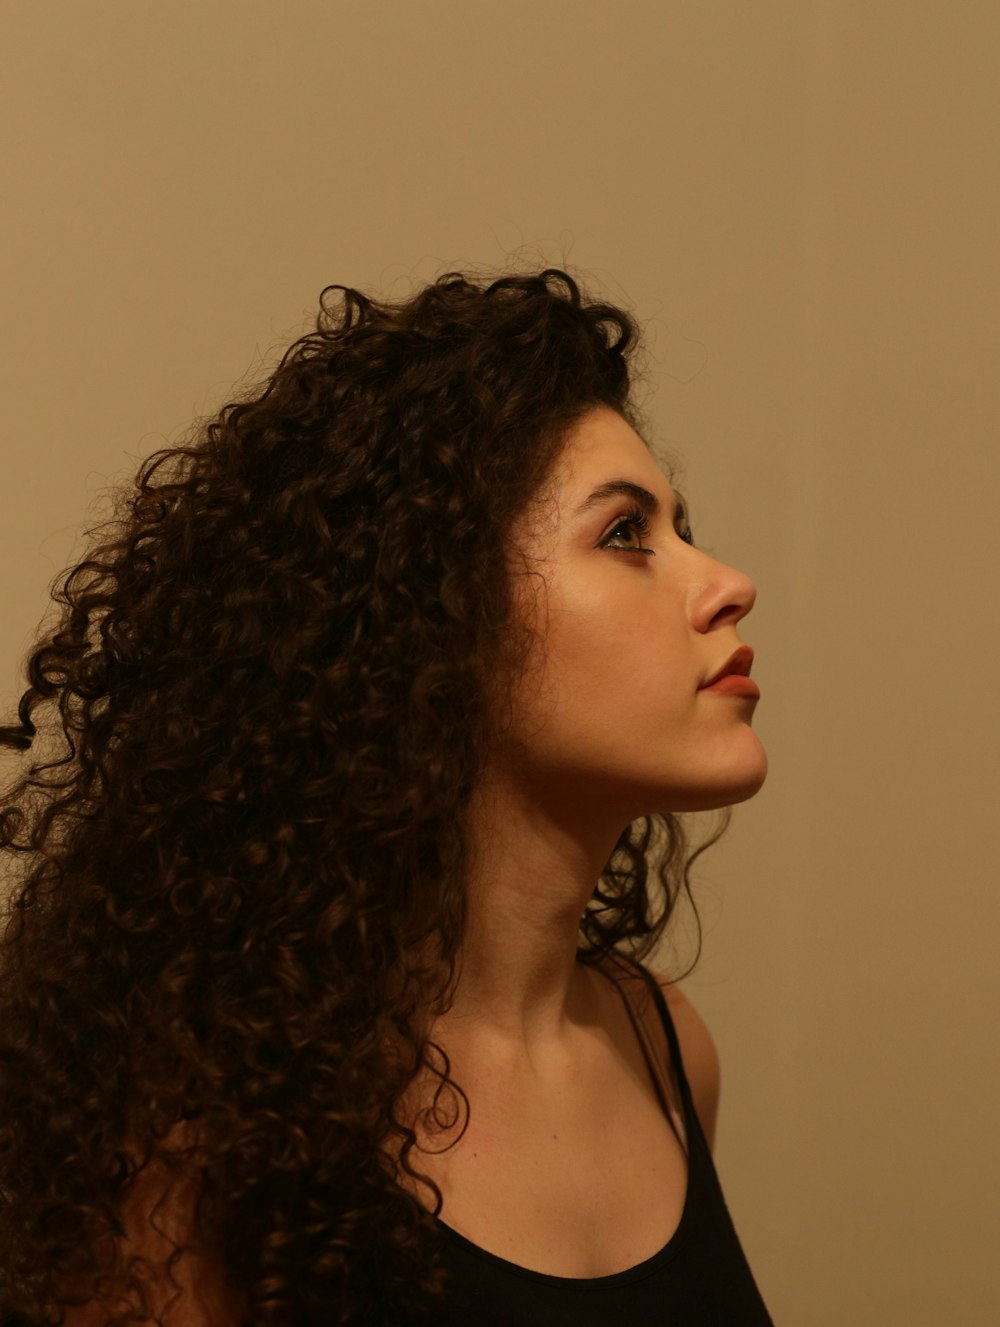 Eine Frau mit langen lockigen Haaren steht vor einer Wand